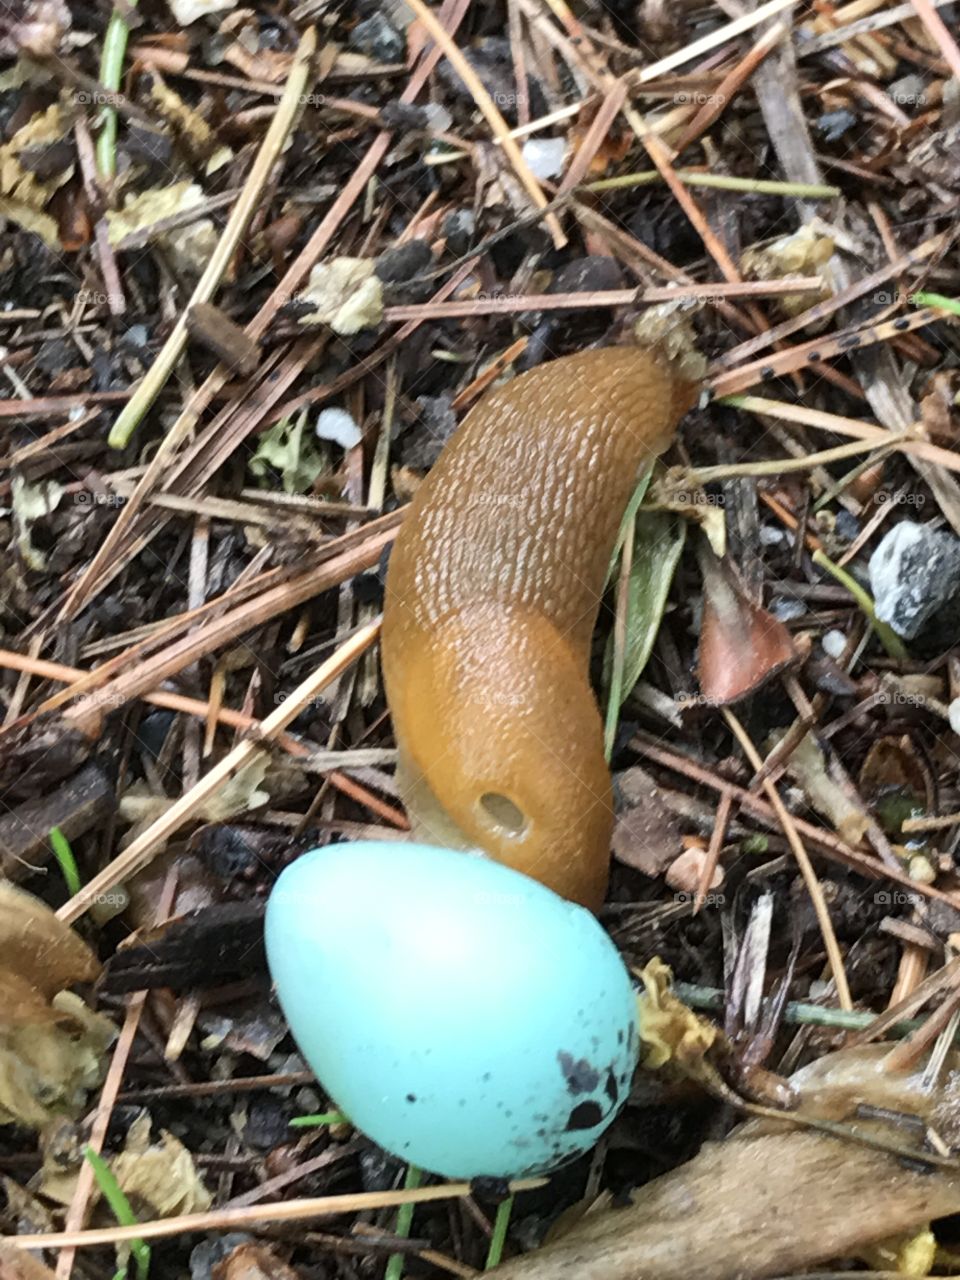 Slug and egg